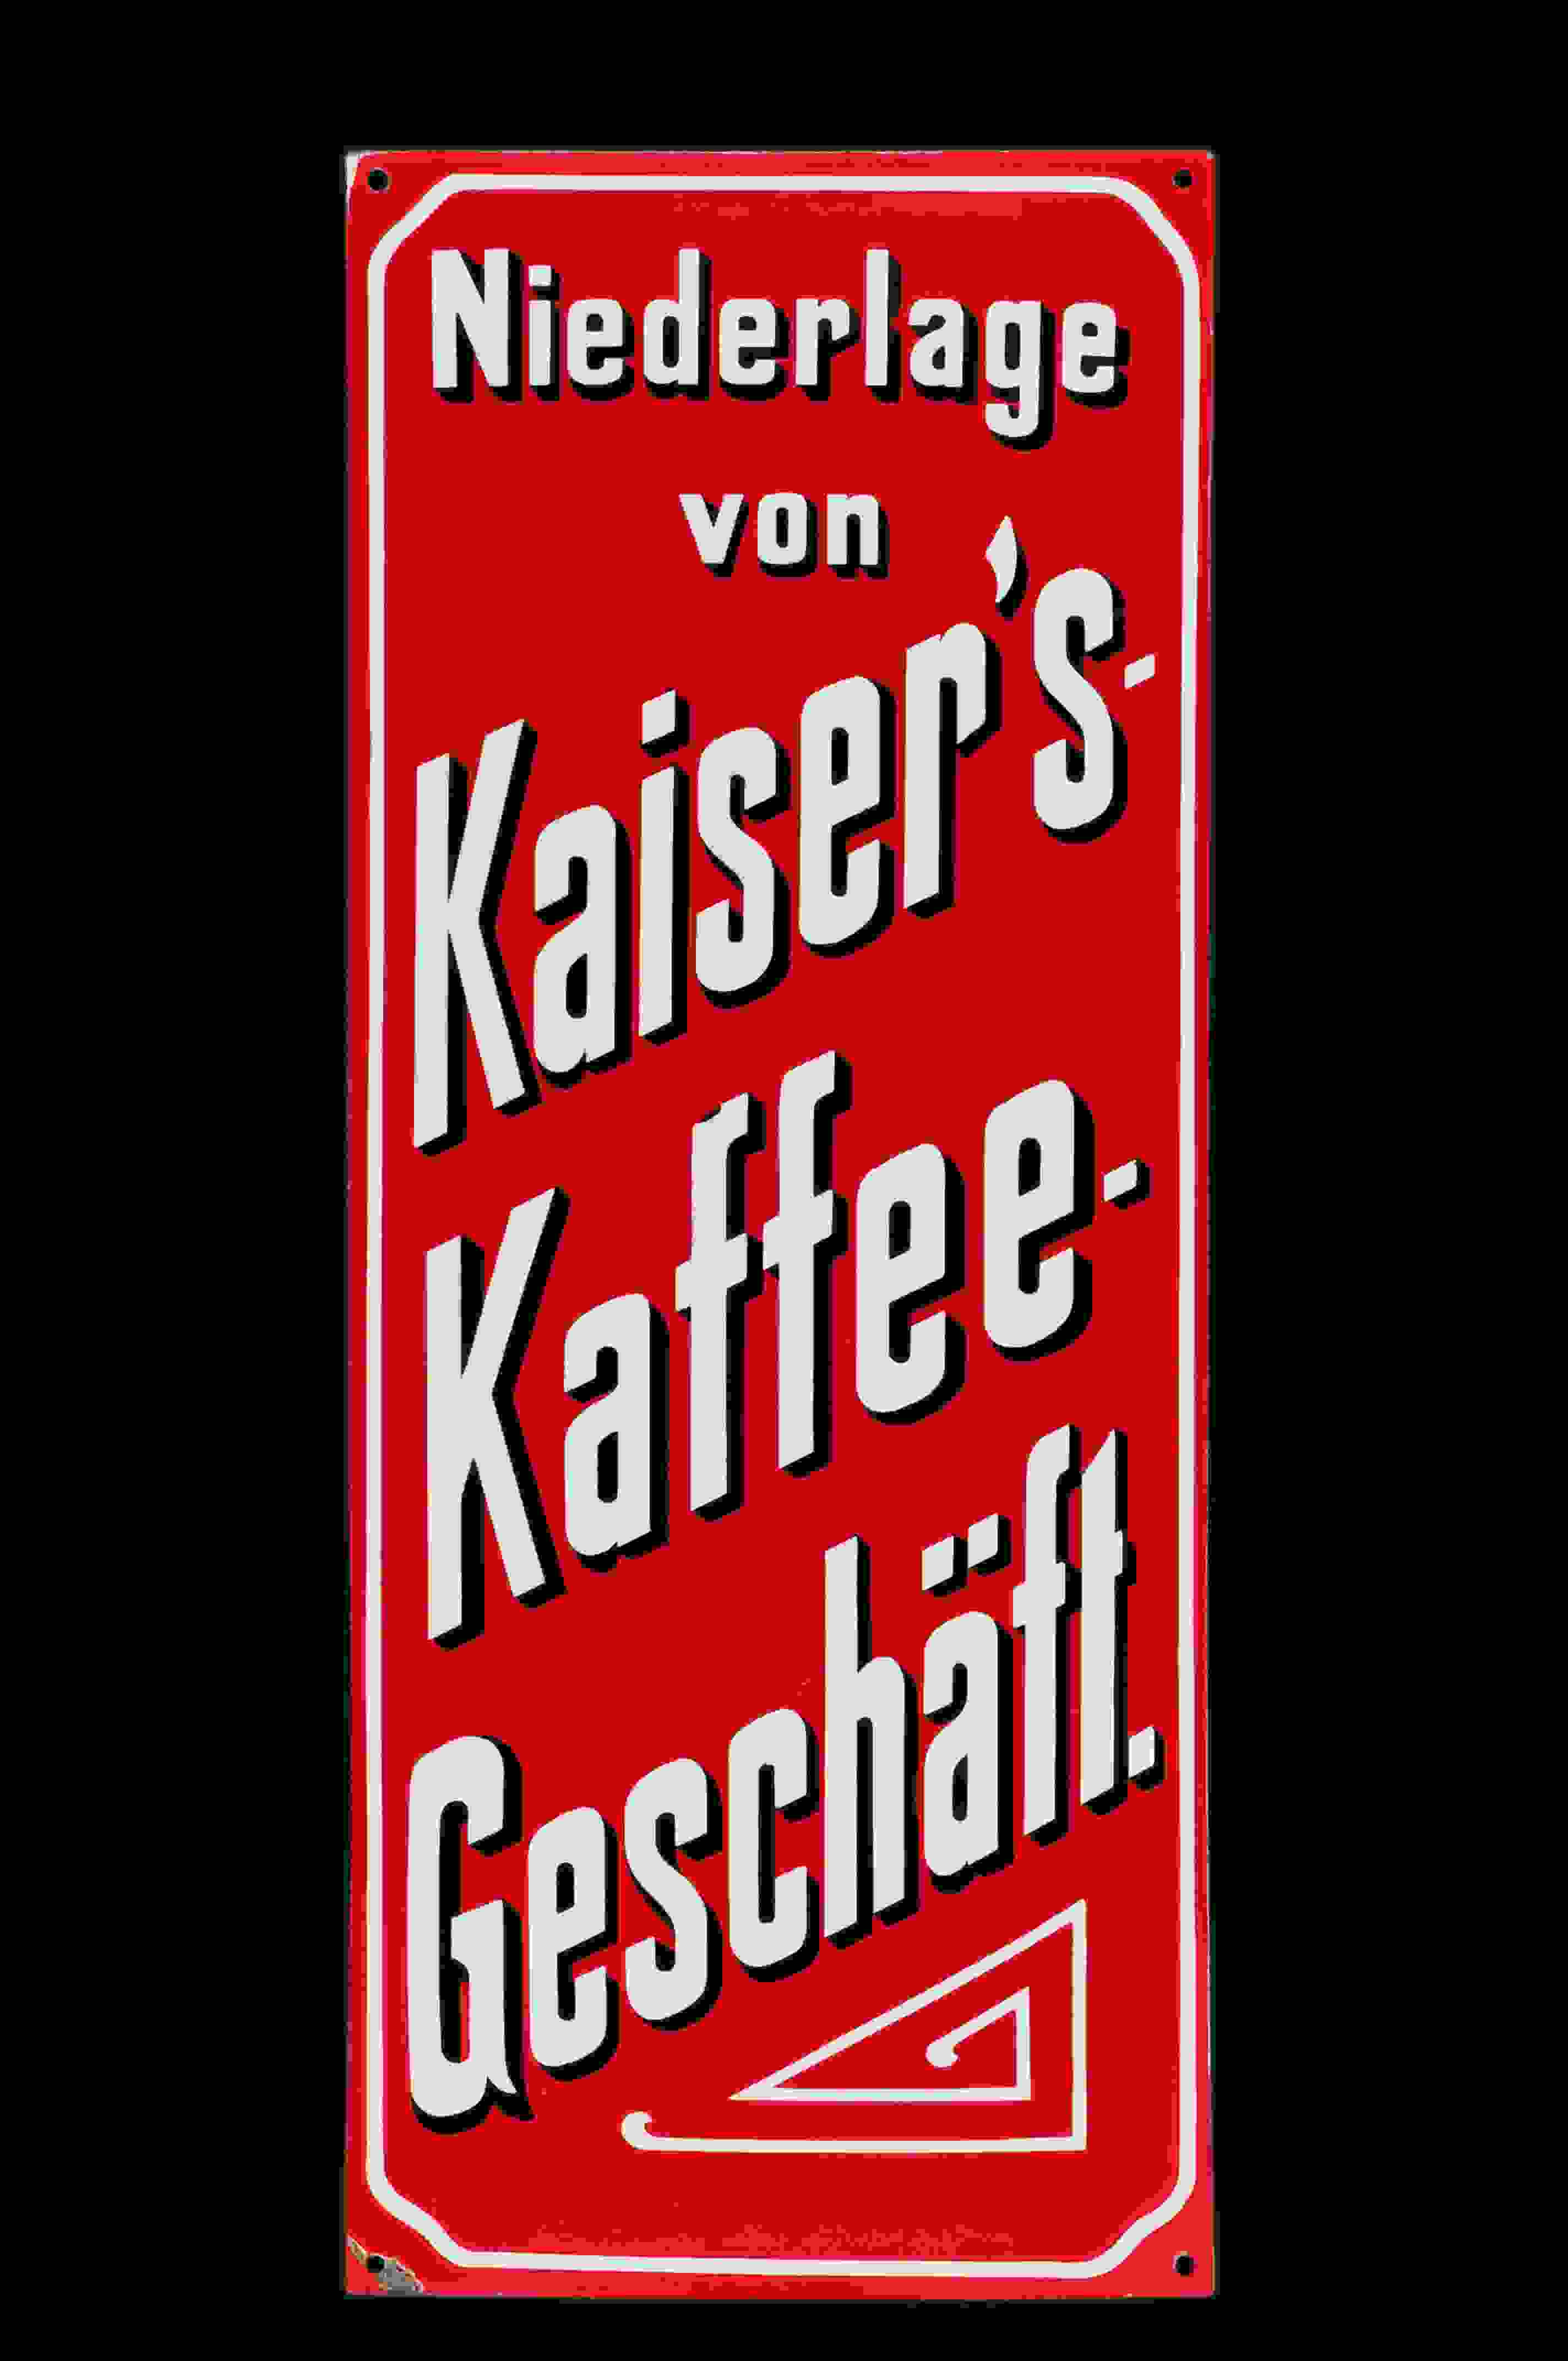 Kaiser's Kaffee-Geschäft 